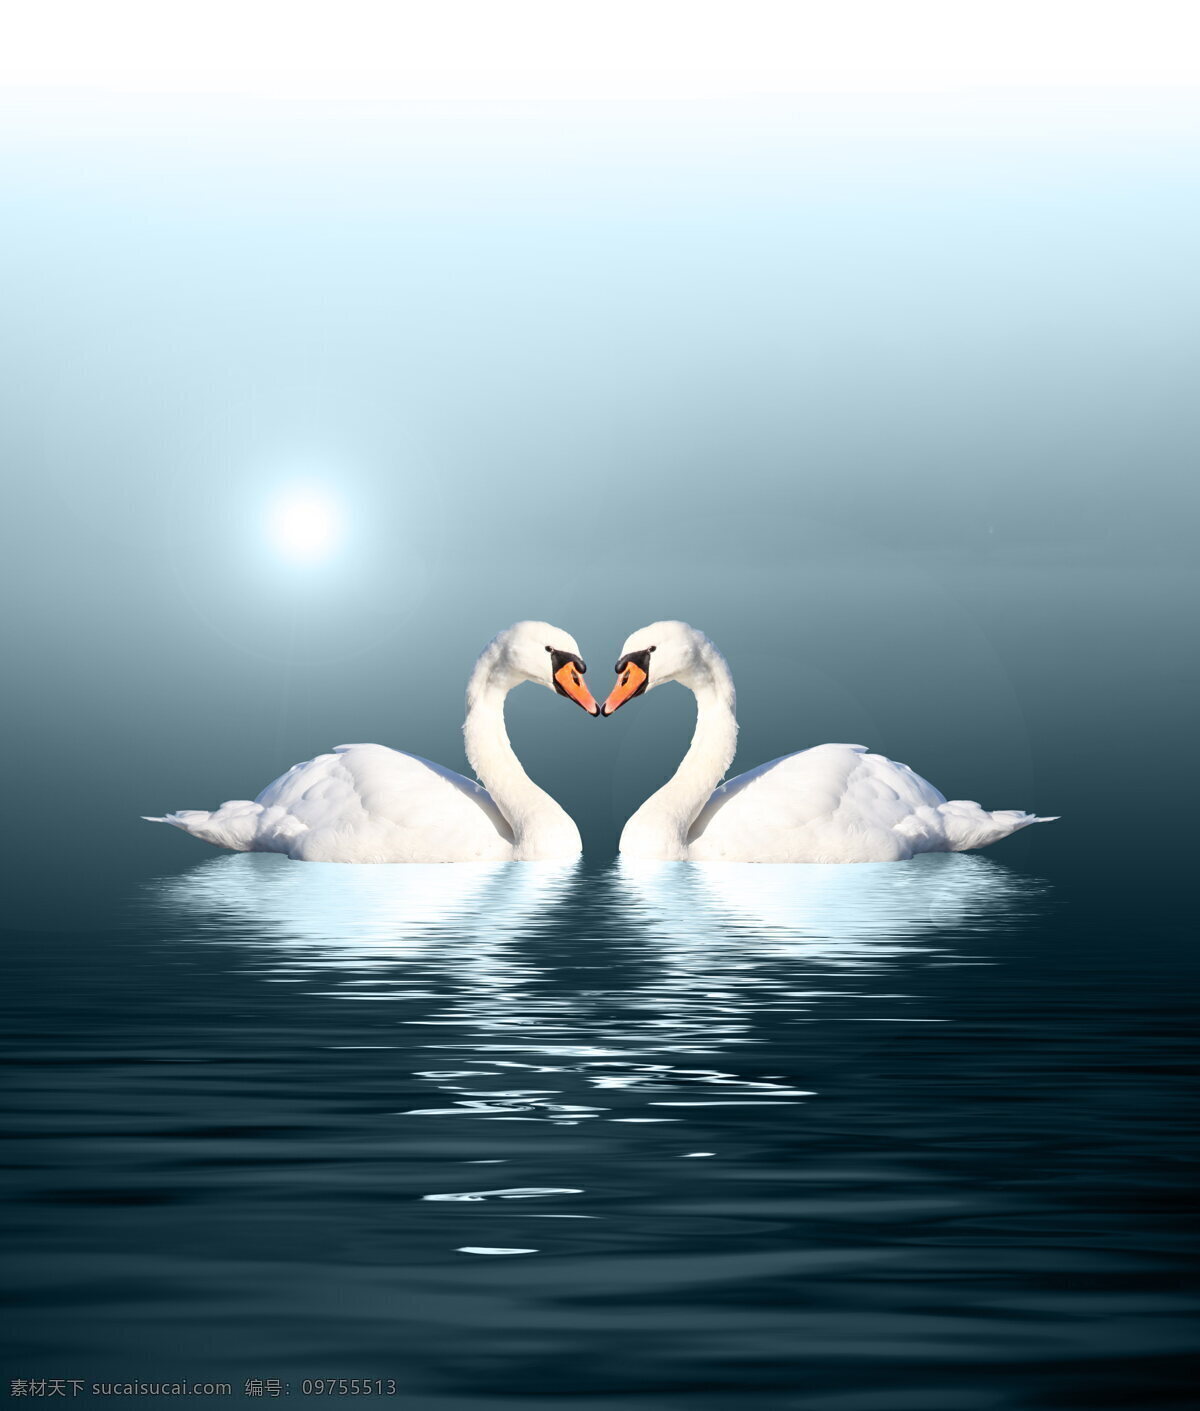 天鹅湖 唯美天鹅 爱情 唯美 天鹅 湖泊 白天鹅 蓝色湖泊 湖水 唯美爱情 情人 情人节 生物世界 鸟类